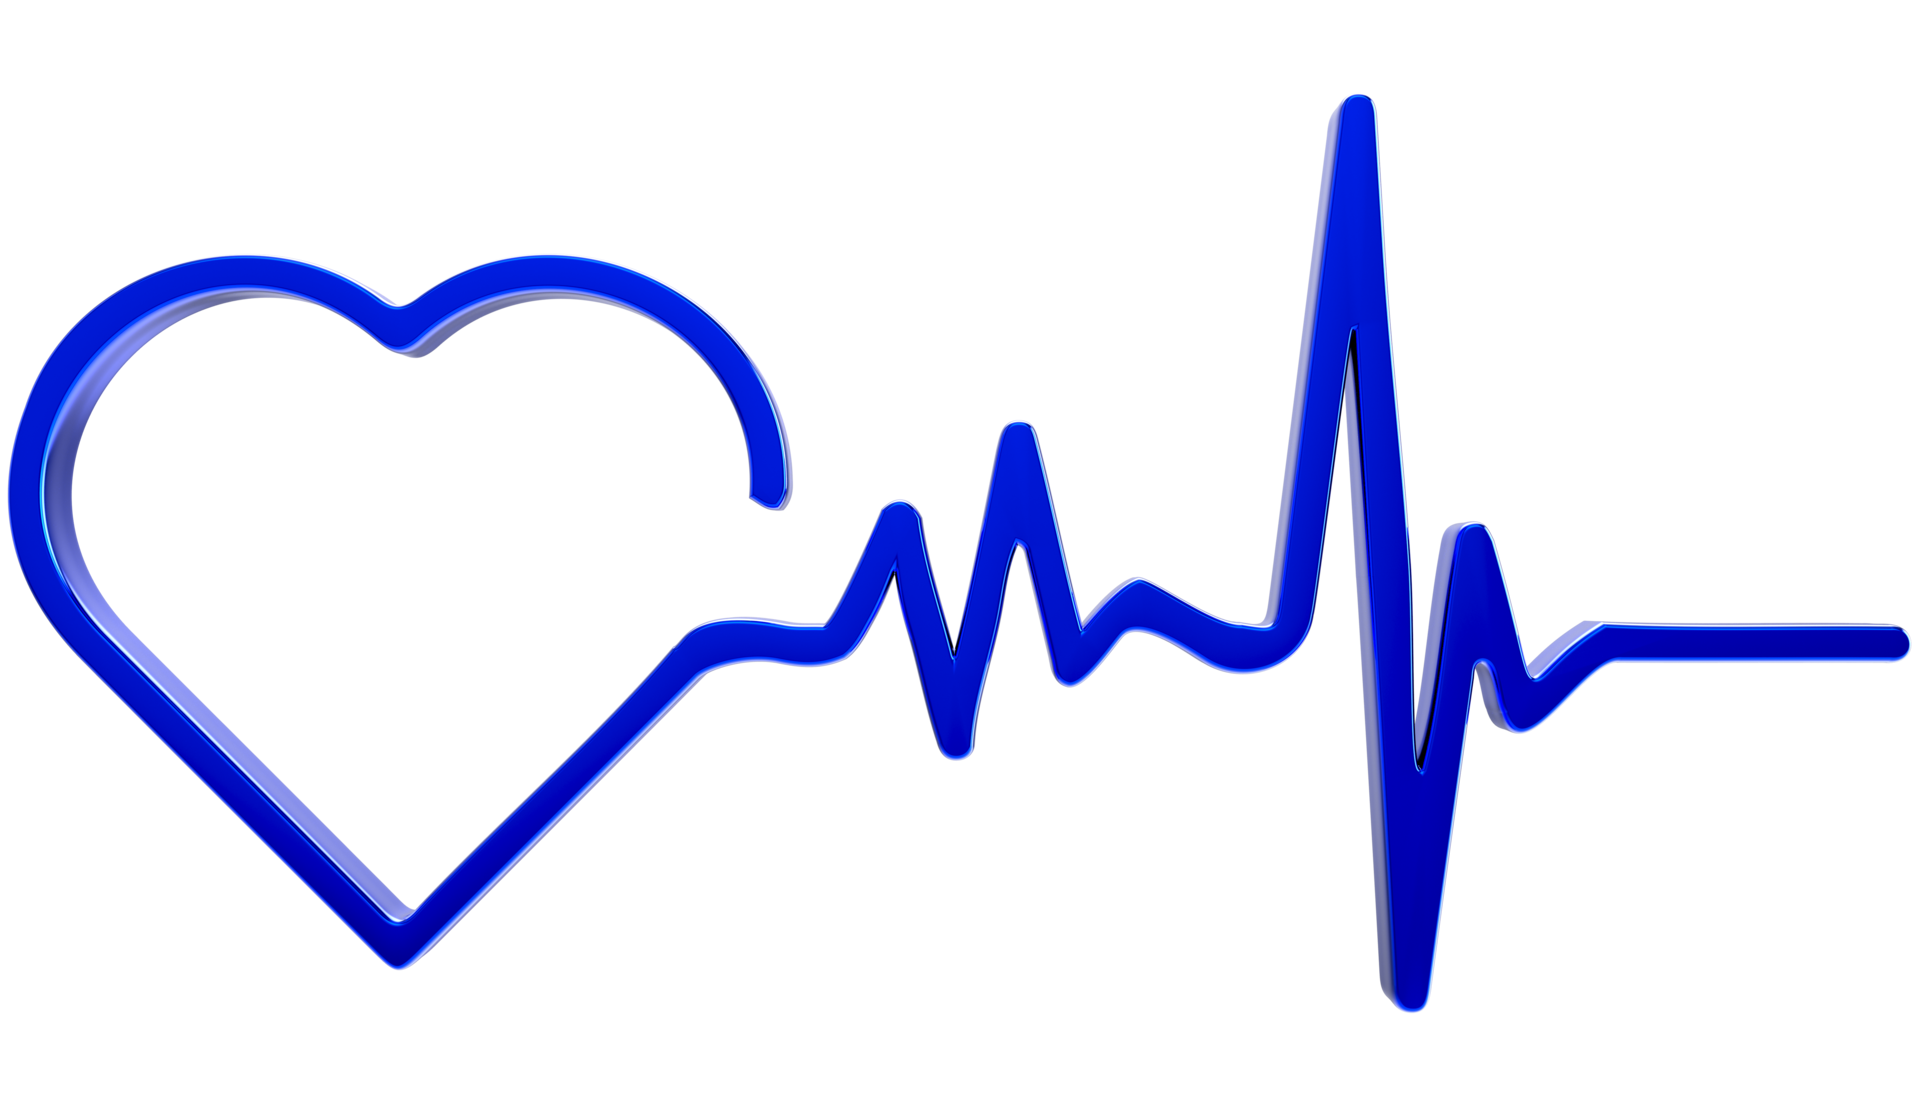 Biểu tượng nhịp tim là một phần quan trọng của việc theo dõi sức khỏe của bạn. Hãy xem hình ảnh về biểu tượng nhịp tim để hiểu rõ hơn về sự nhạy cảm của công nghệ đo đạc hiện đại. Hãy cùng khám phá và sử dụng những công nghệ này để chăm sóc sức khỏe tốt nhất.